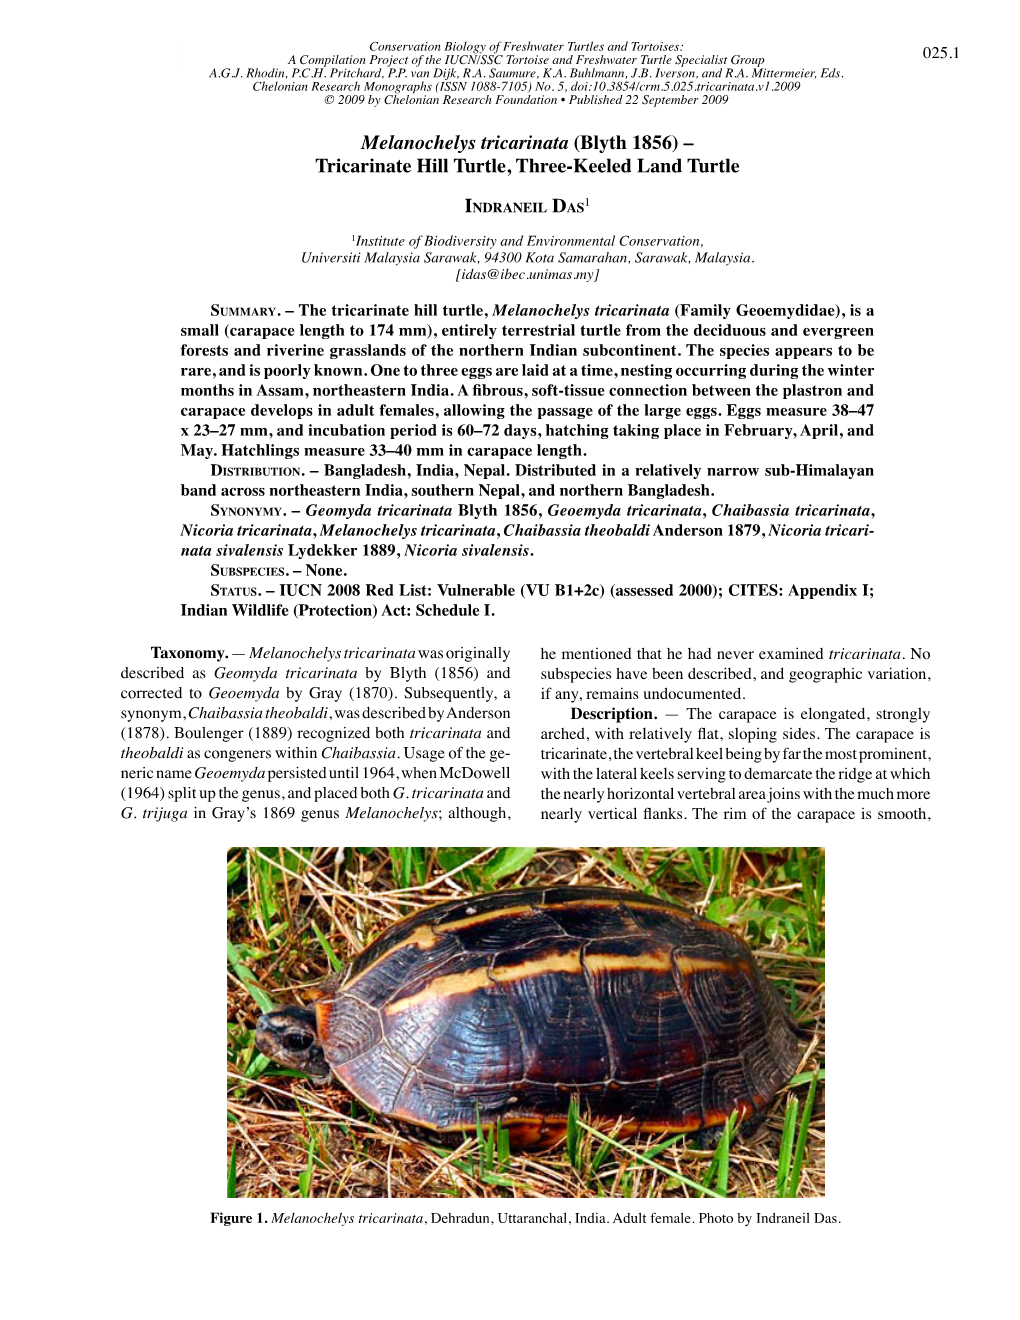 Melanochelys Tricarinata (Blyth 1856) – Tricarinate Hill Turtle, Three-Keeled Land Turtle